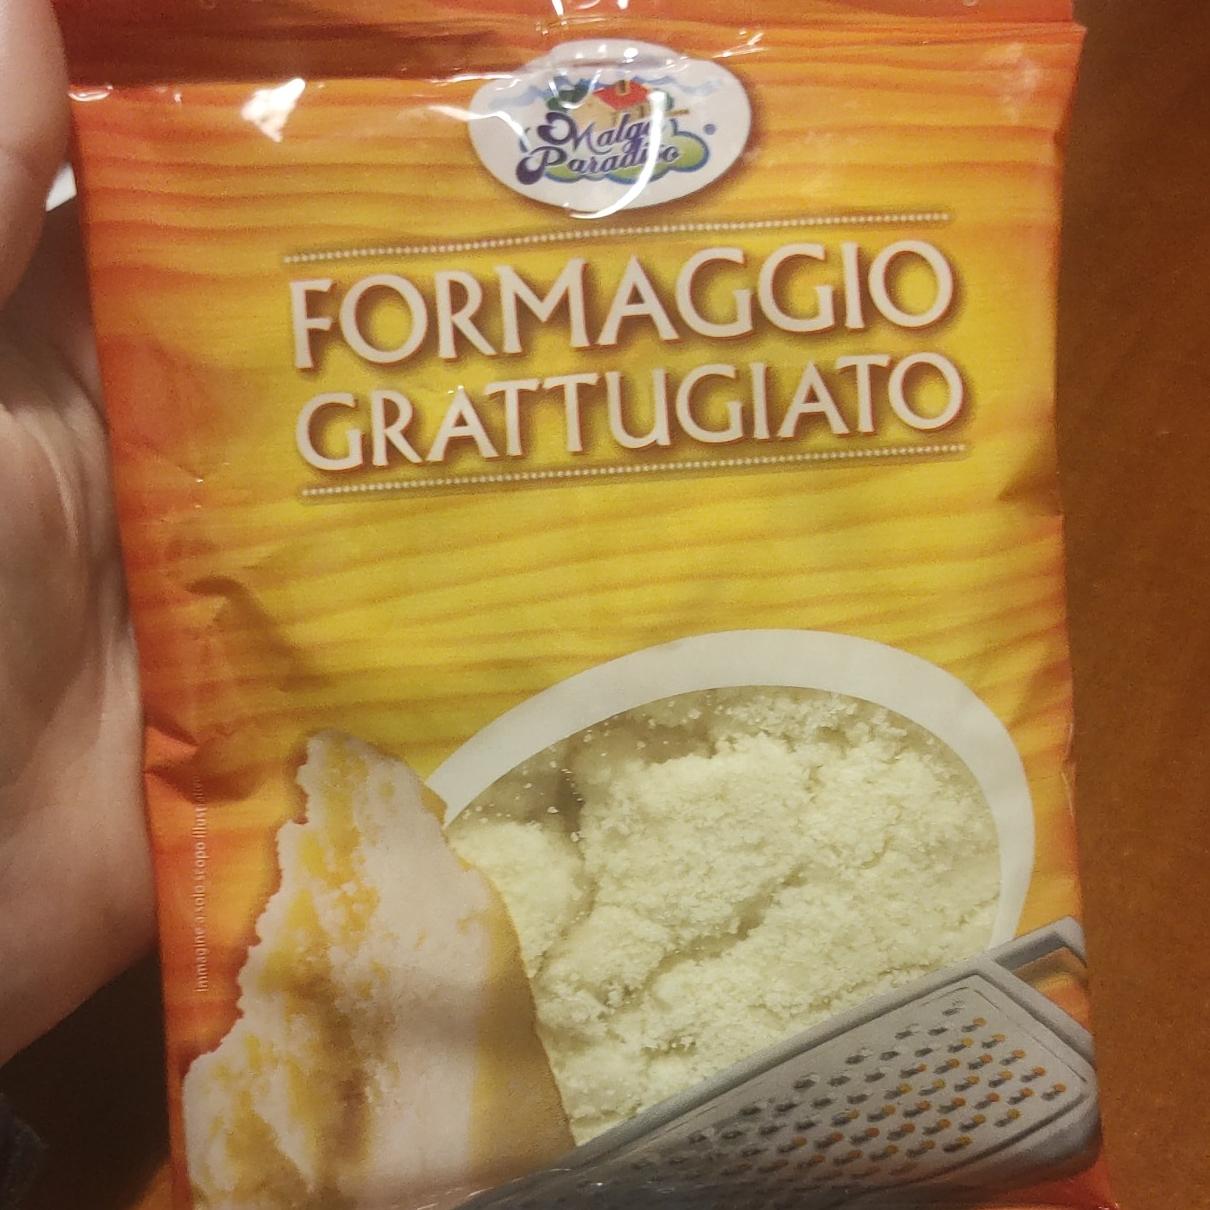 Фото - Сыр тертый Formaggio Grattugiato Malga Paradiso